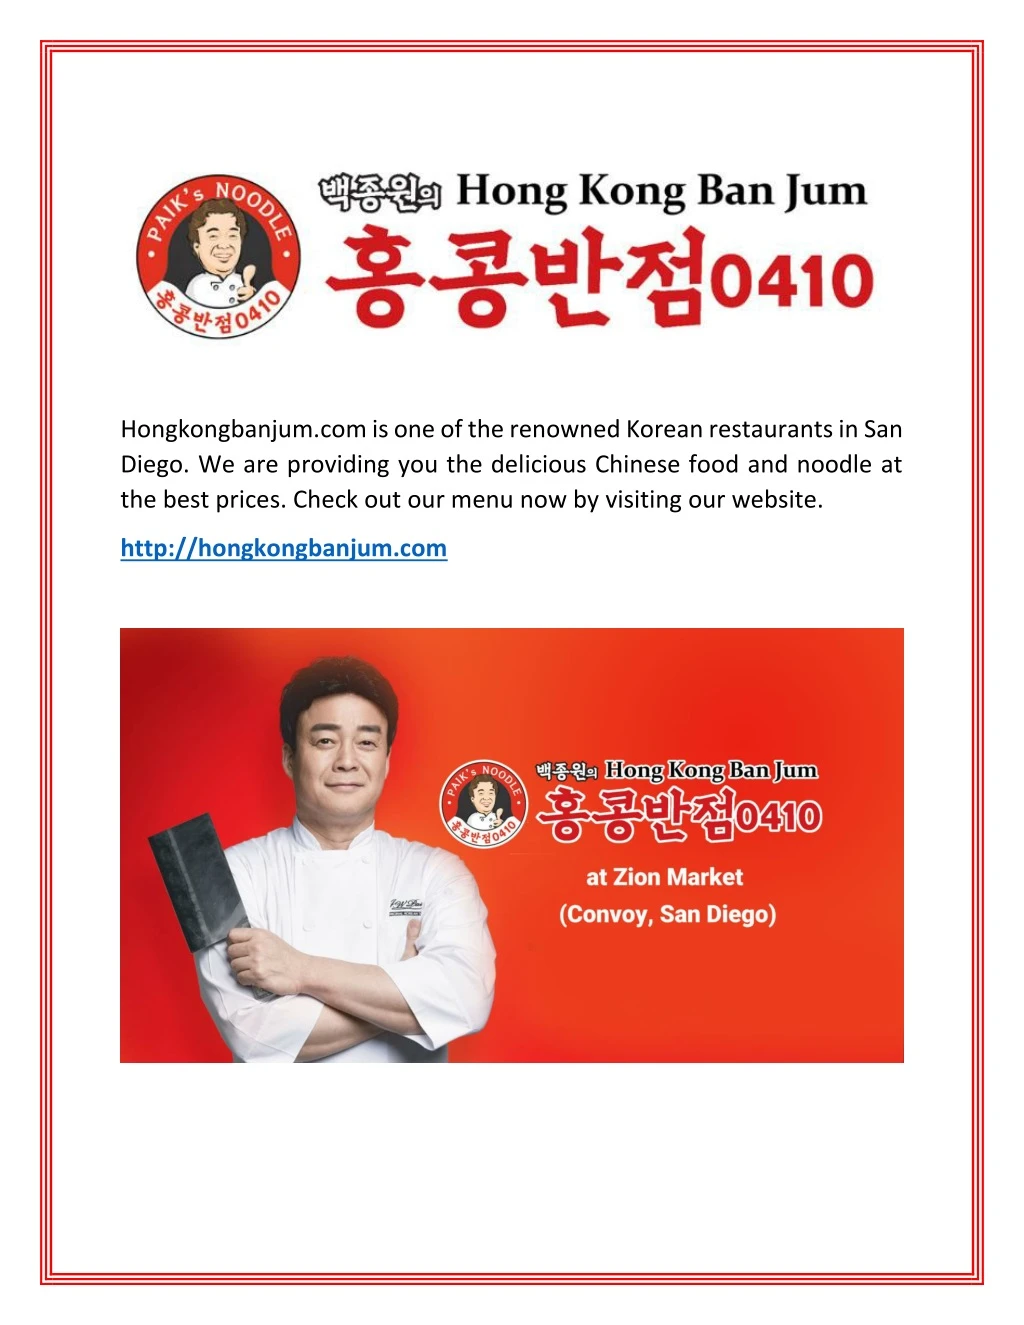 hongkongbanjum com is one of the renowned korean